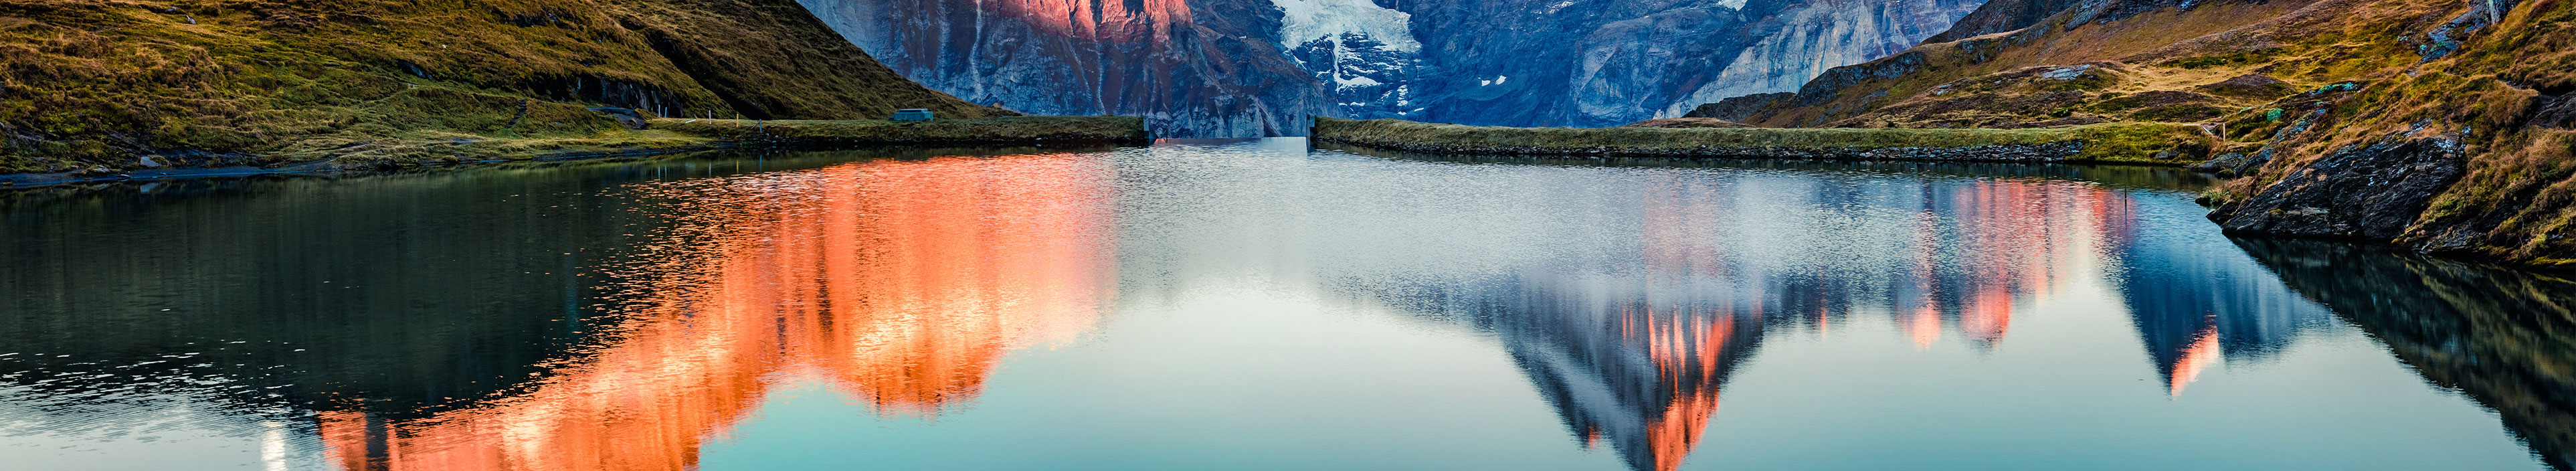 Blick auf einen Gebirgssee in der Schweiz beim Sonnenuntergang